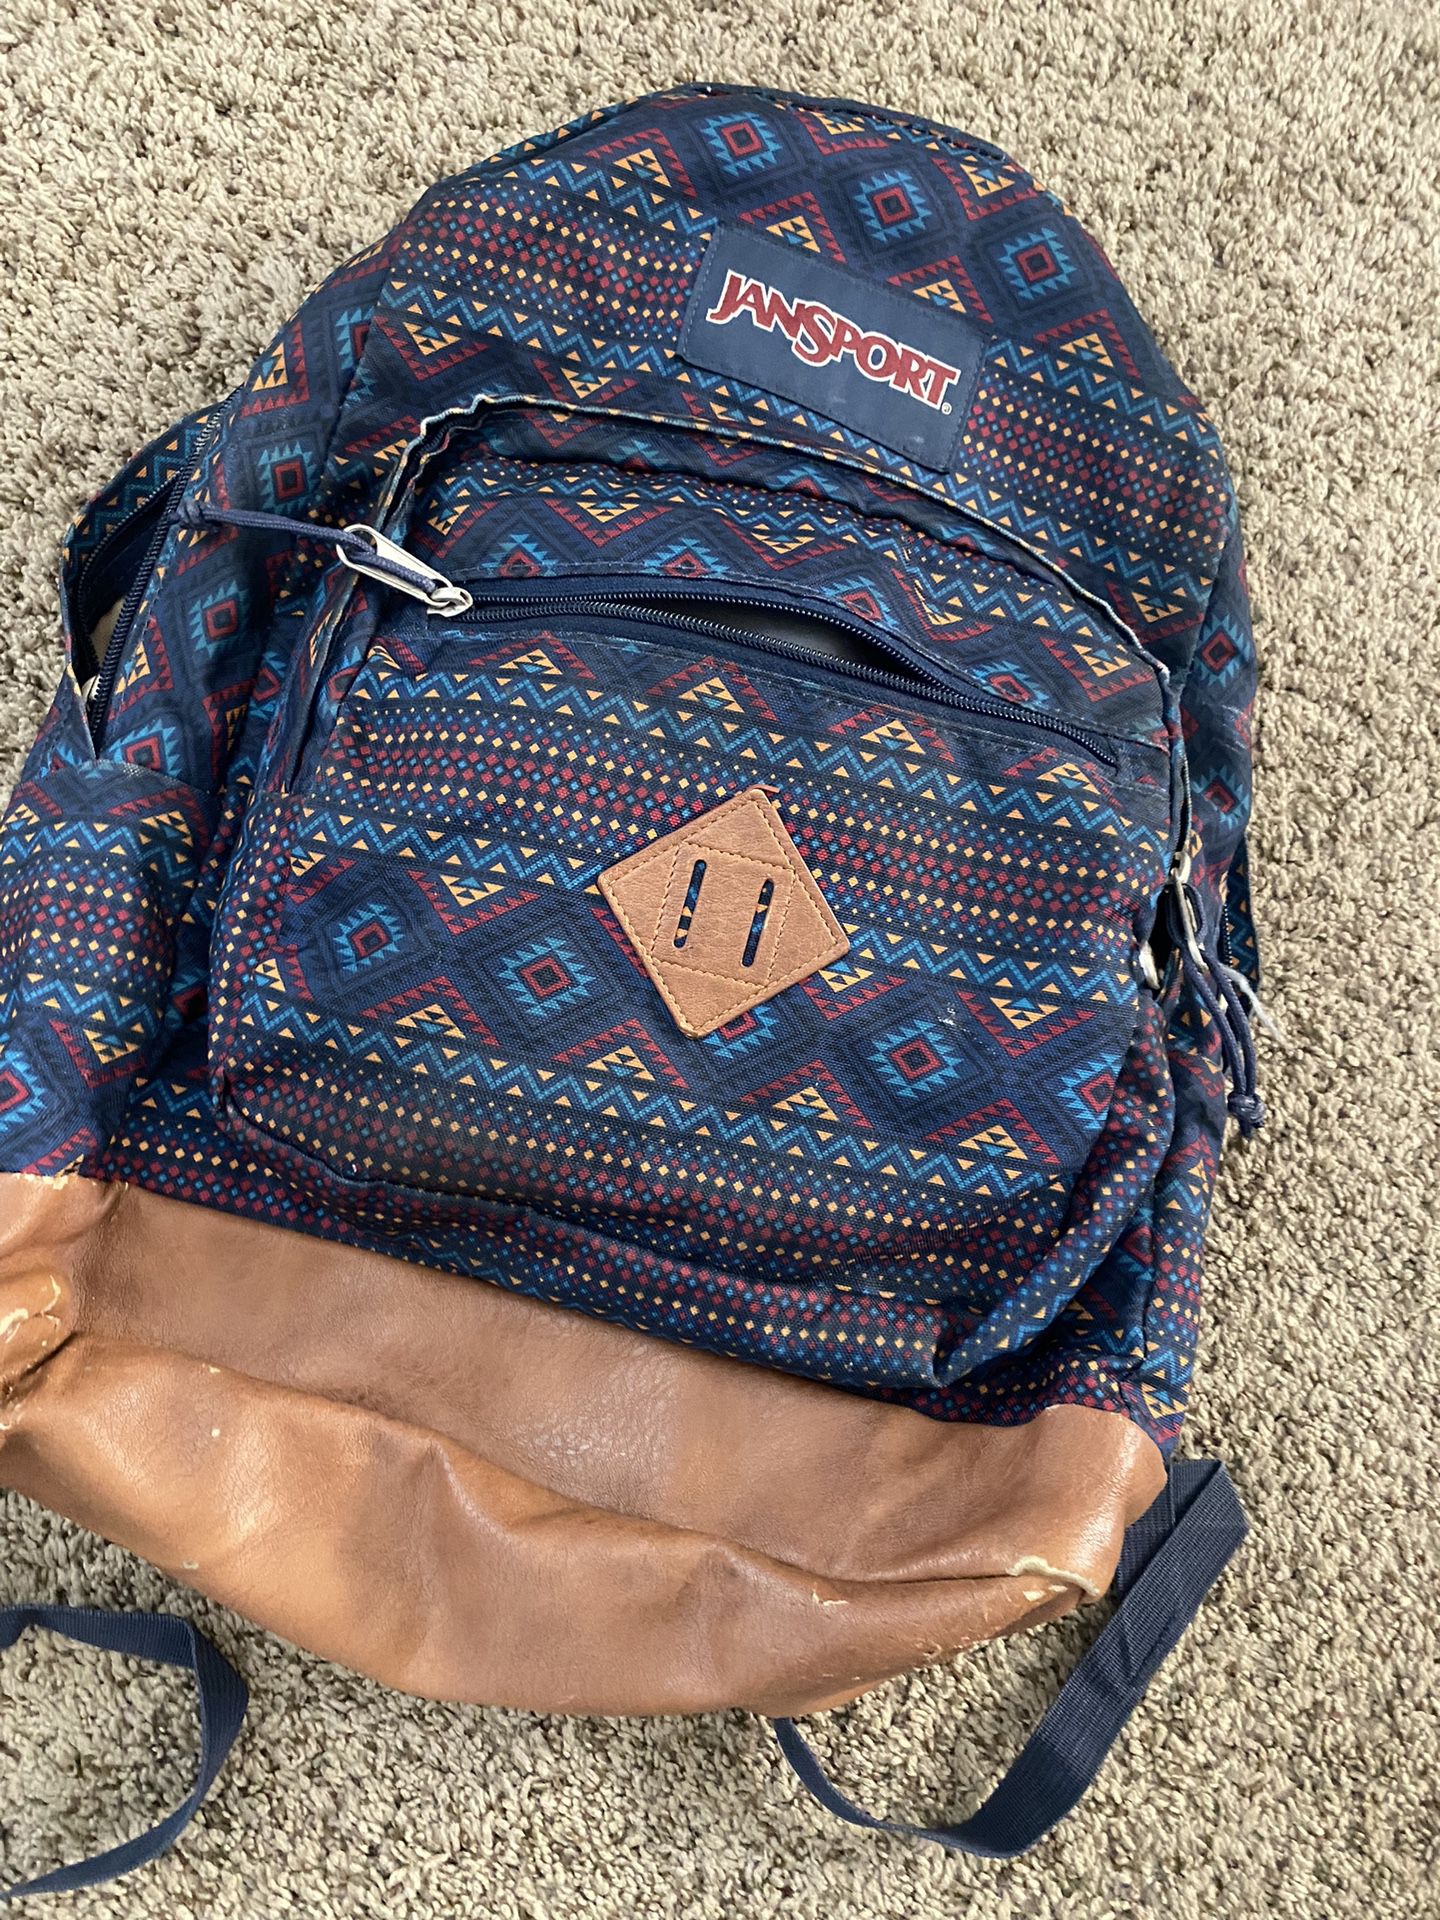 Jansport Backpack